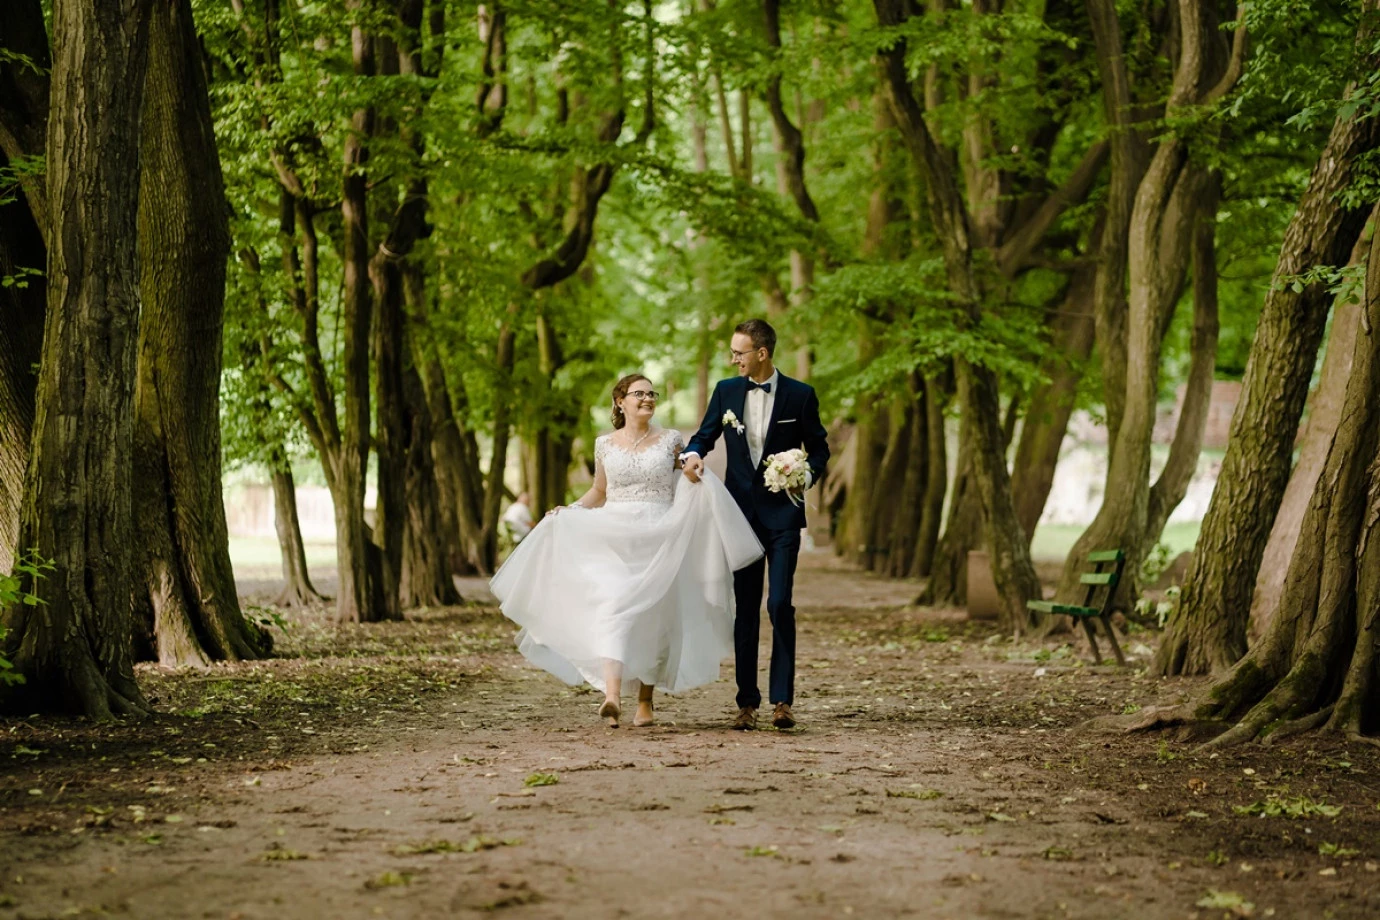 zdjęcia jaroslaw fotograf piotr-drabik-wedding-photography portfolio zdjecia slubne inspiracje wesele plener slubny sesja slubna